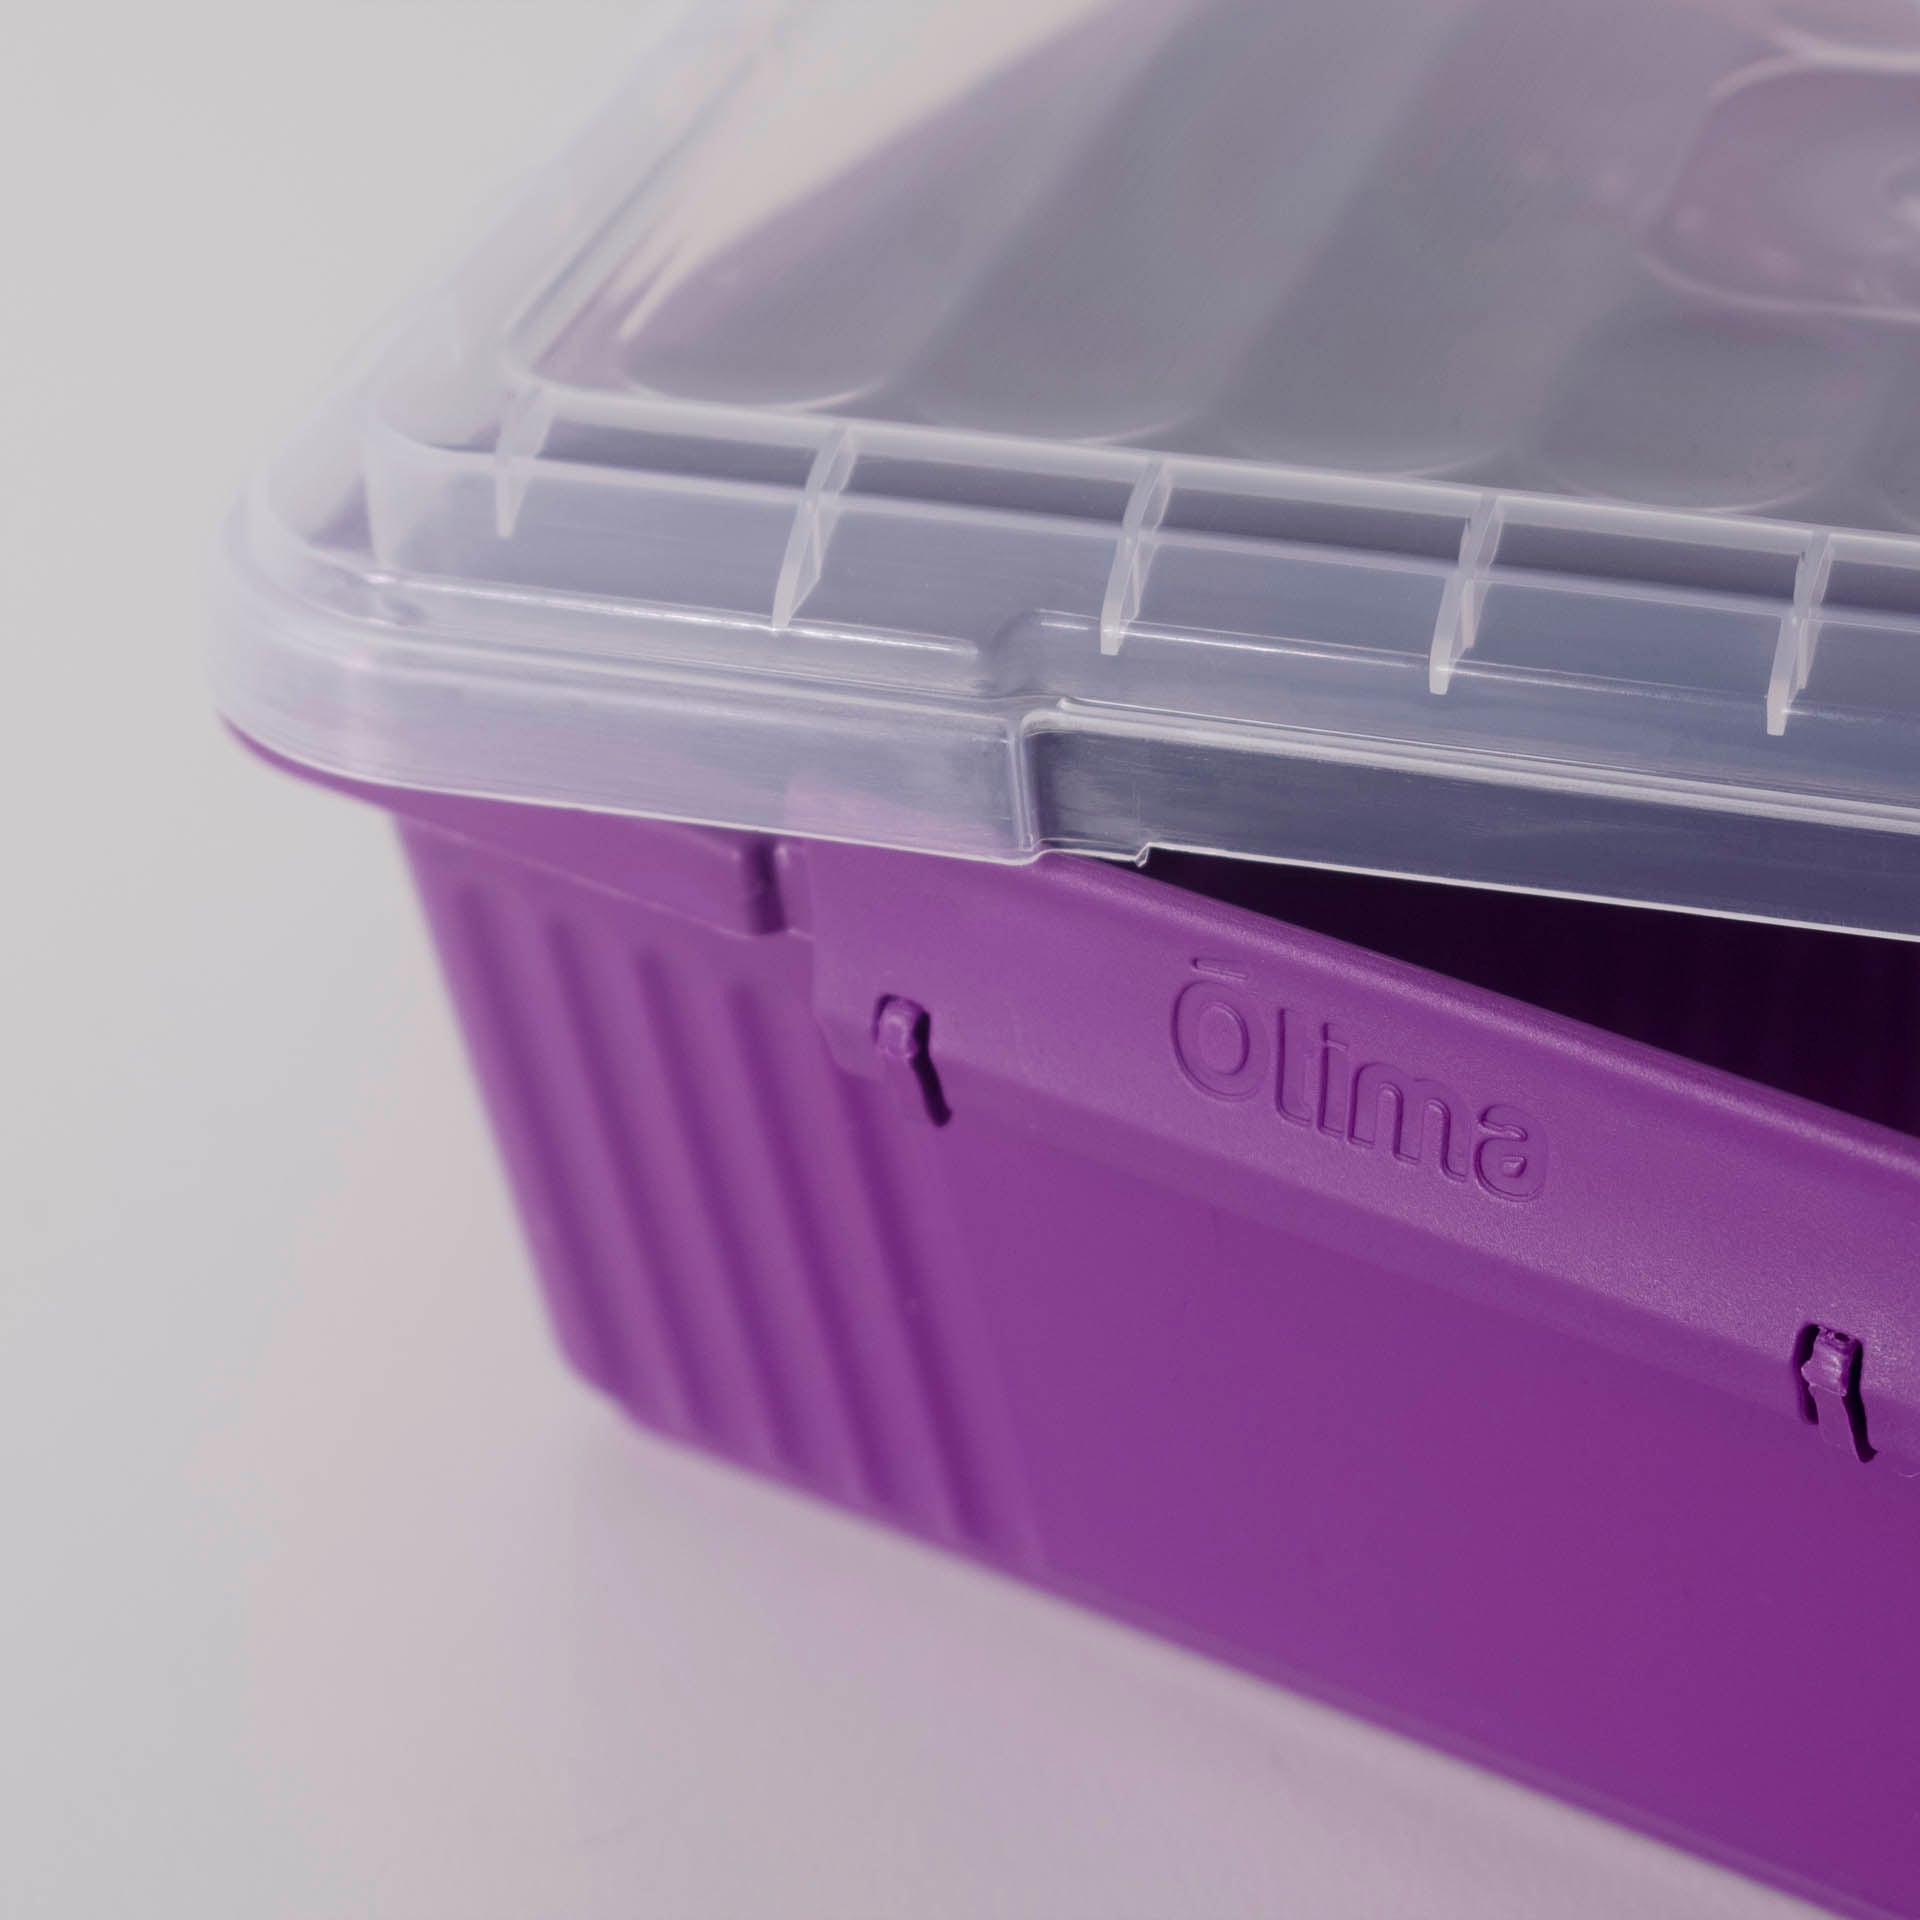 Otima Lock Box 1.1L Plastic Lunch Box